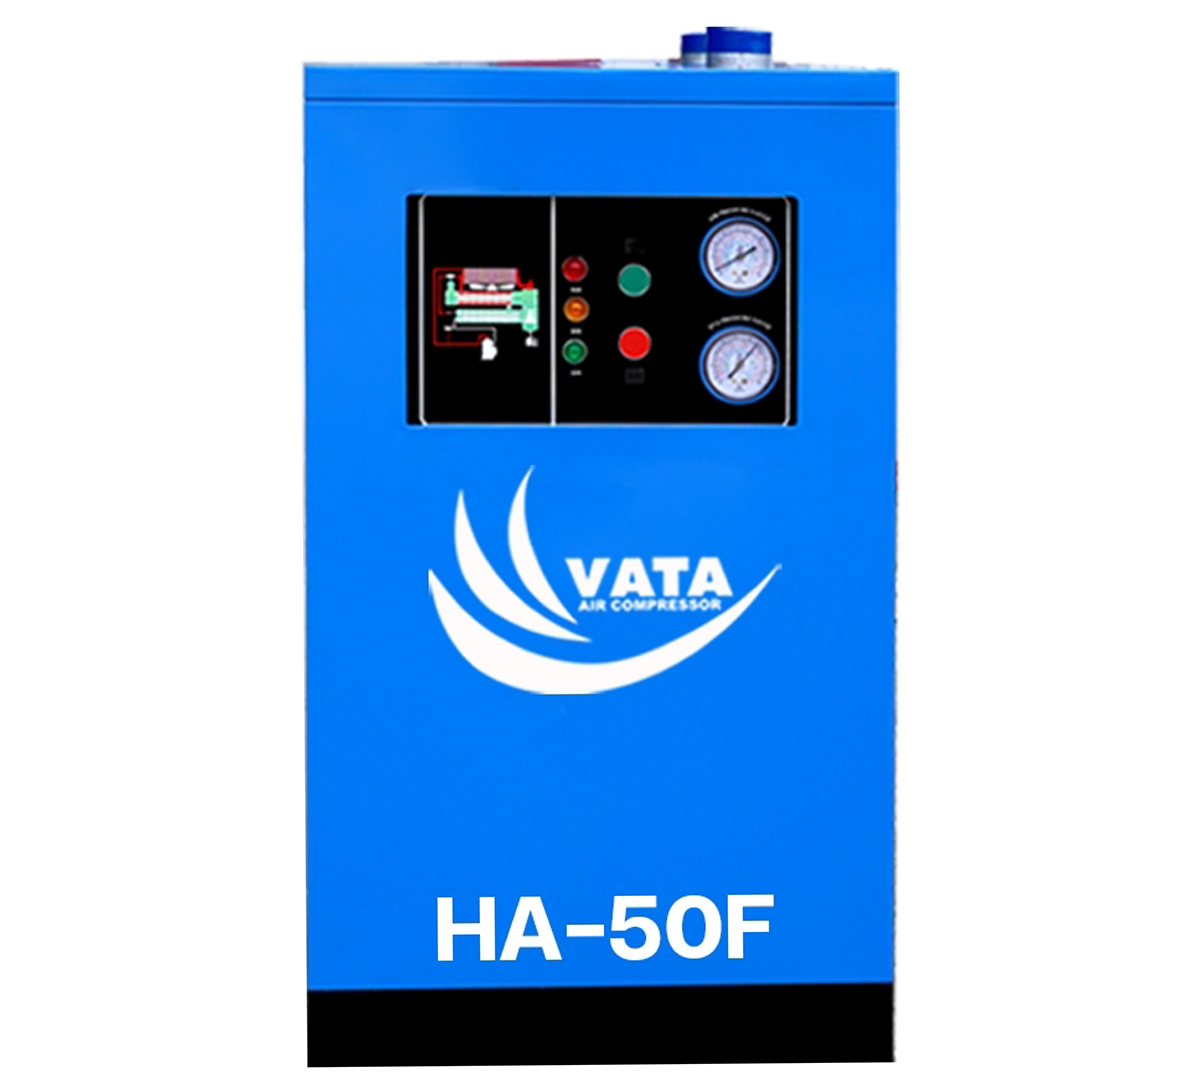 เครื่องทำลมแห้ง Refrigerated Air Dryer แบรนด์ VATA รุ่น HA-50F ขนาด 1.42 kw. ไฟฟ้า 220V รับประกันสินค้า 1 ปี ตามเงื่อนไขของบริษัทฯ